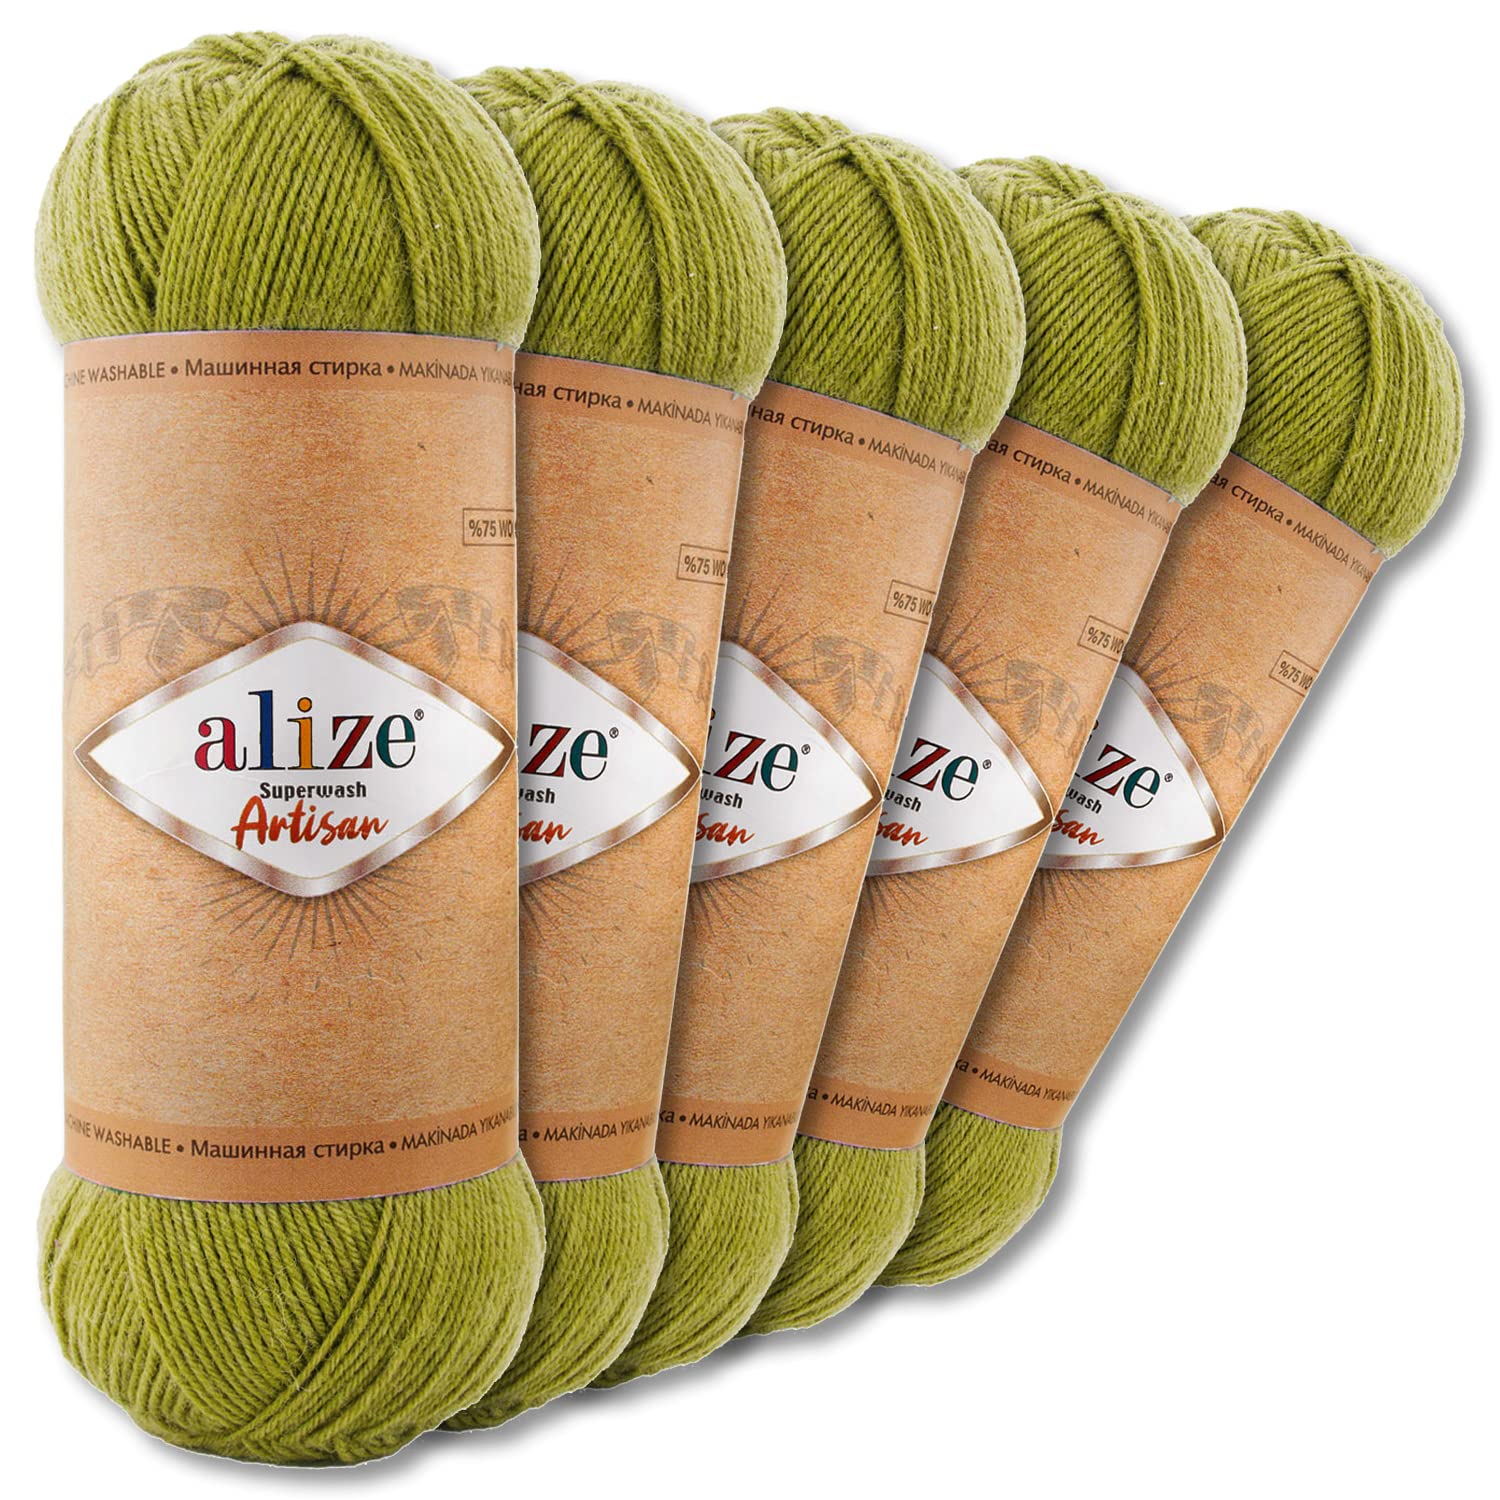 Wohnkult Alize 5 x 100 g Superwash Artisan Sockenwolle Premium 16 Auswahl Kontrast Häkeln Stricken (11 | Hellgrün)